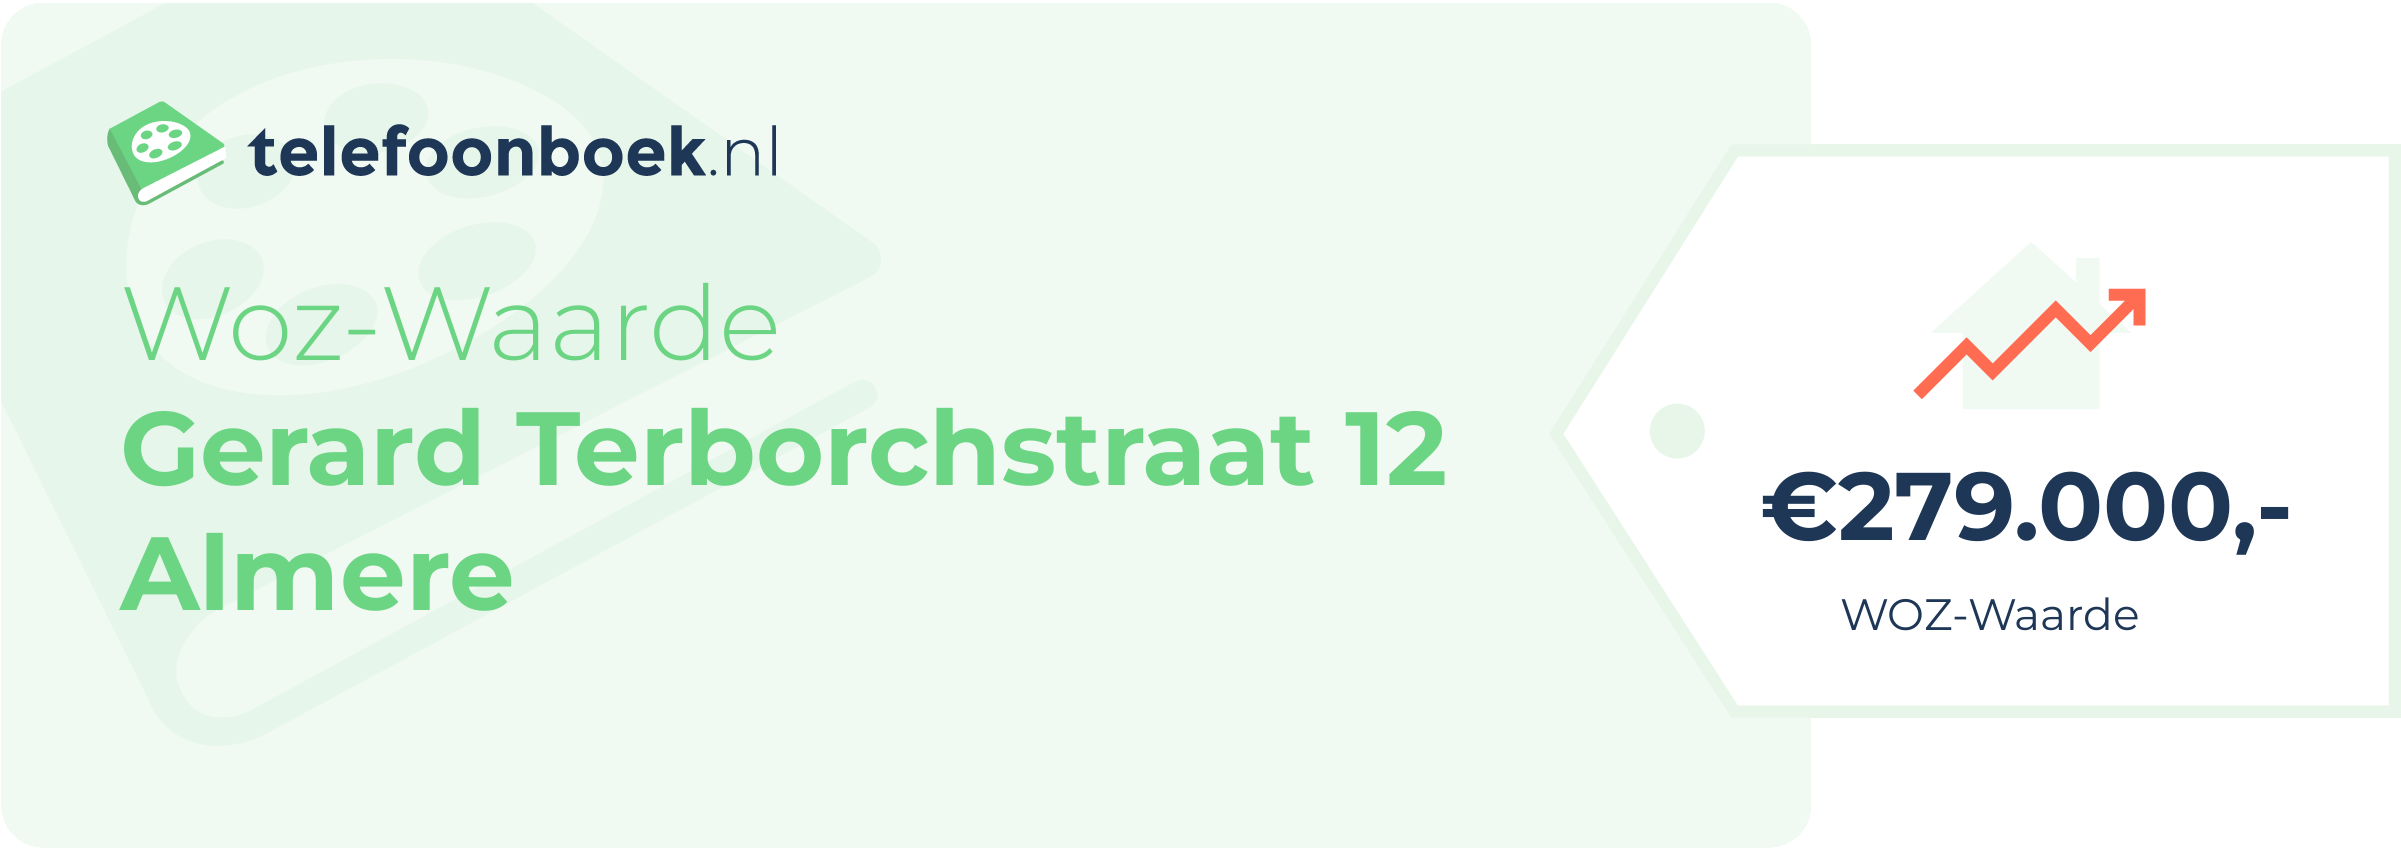 WOZ-waarde Gerard Terborchstraat 12 Almere